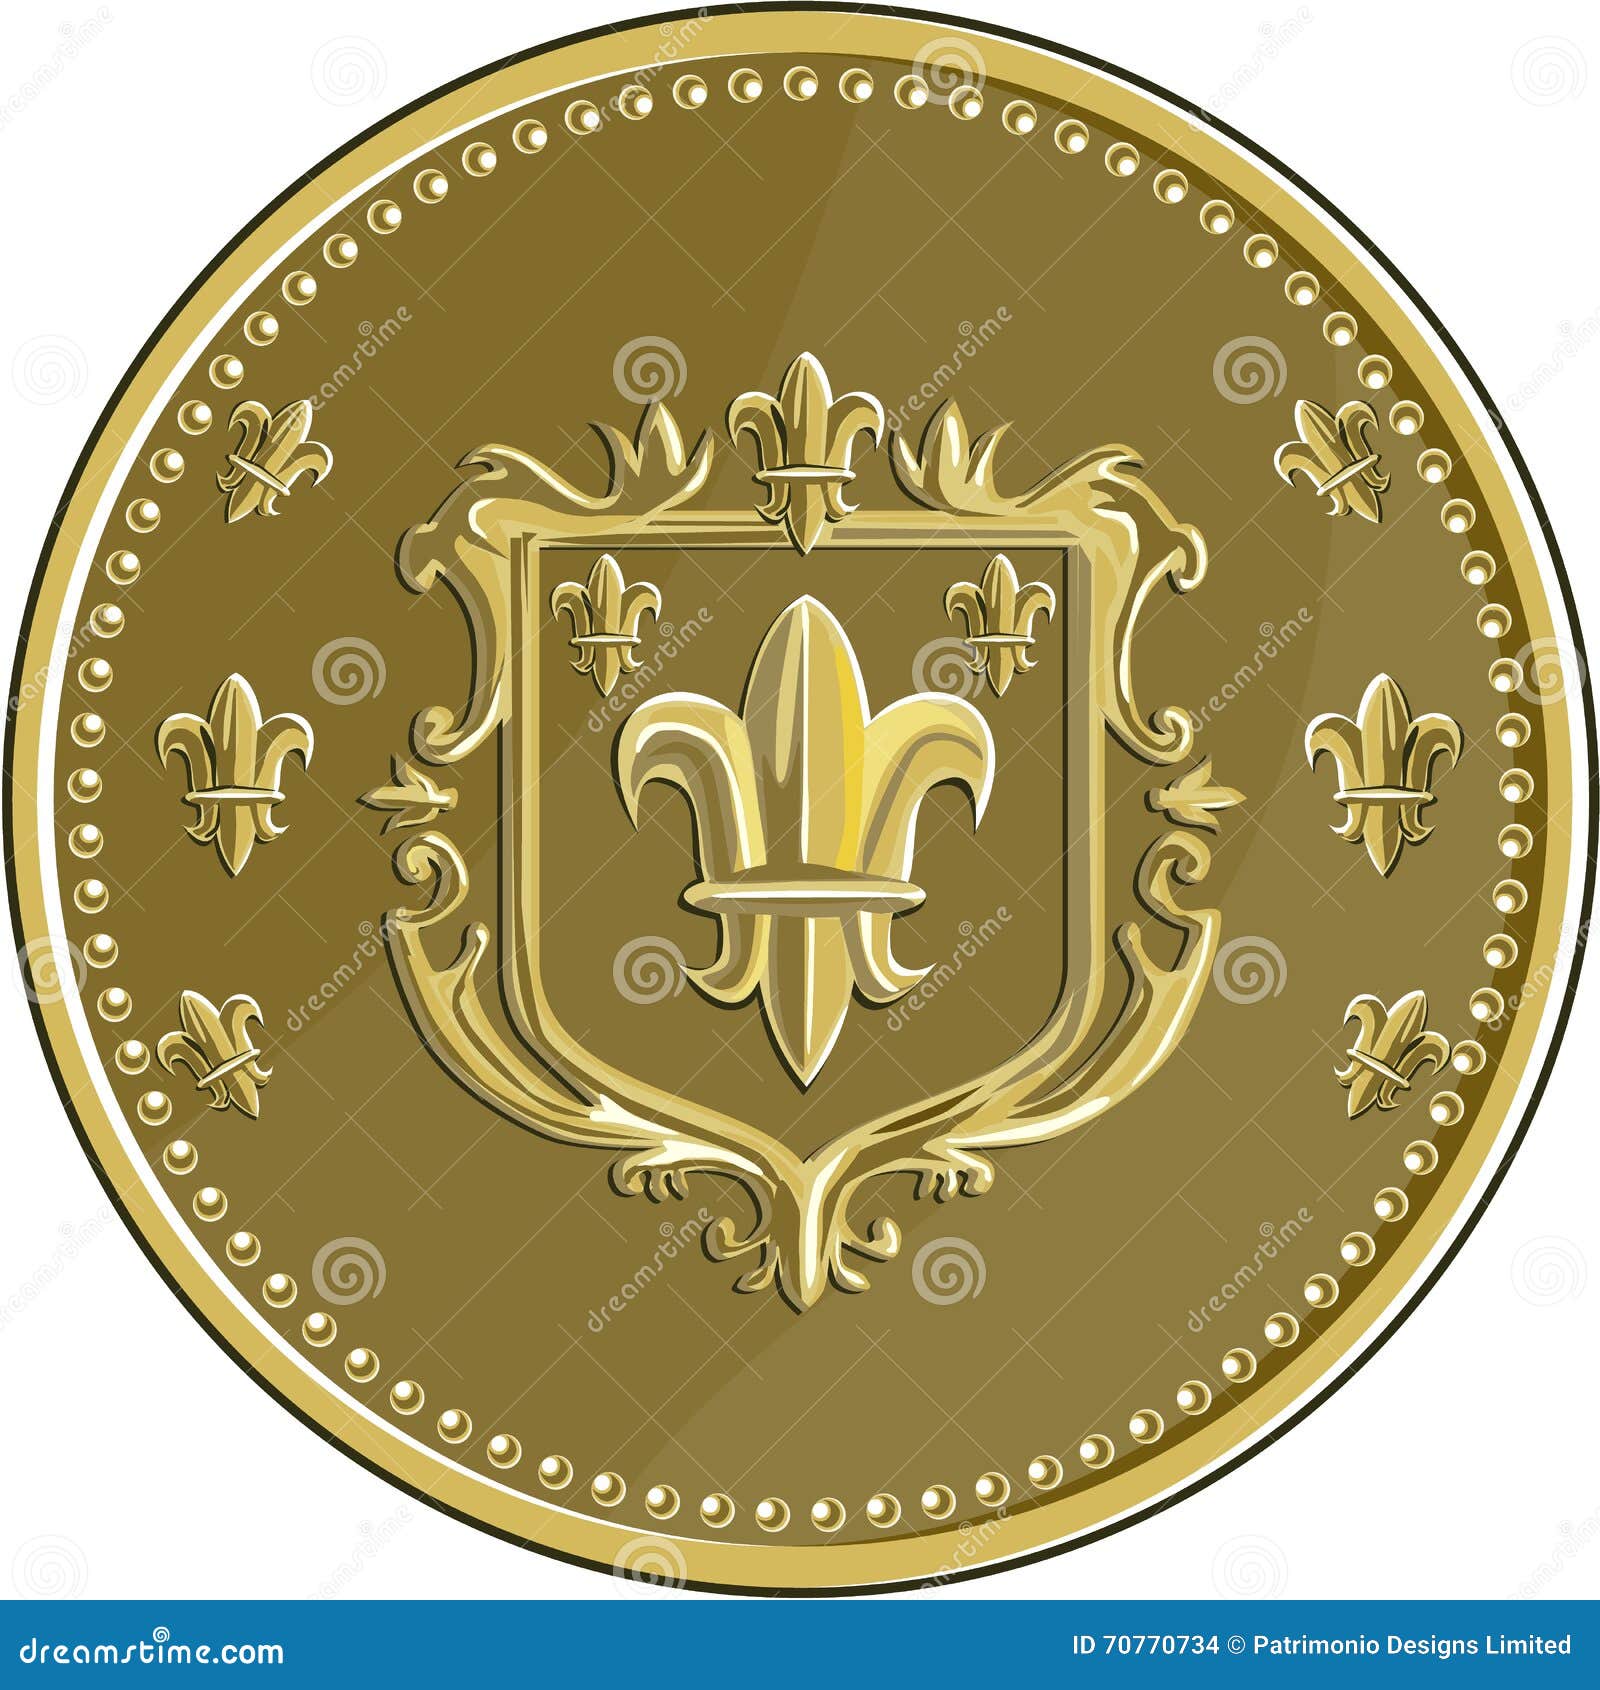 fleur de lis coat of arms gold medal retro